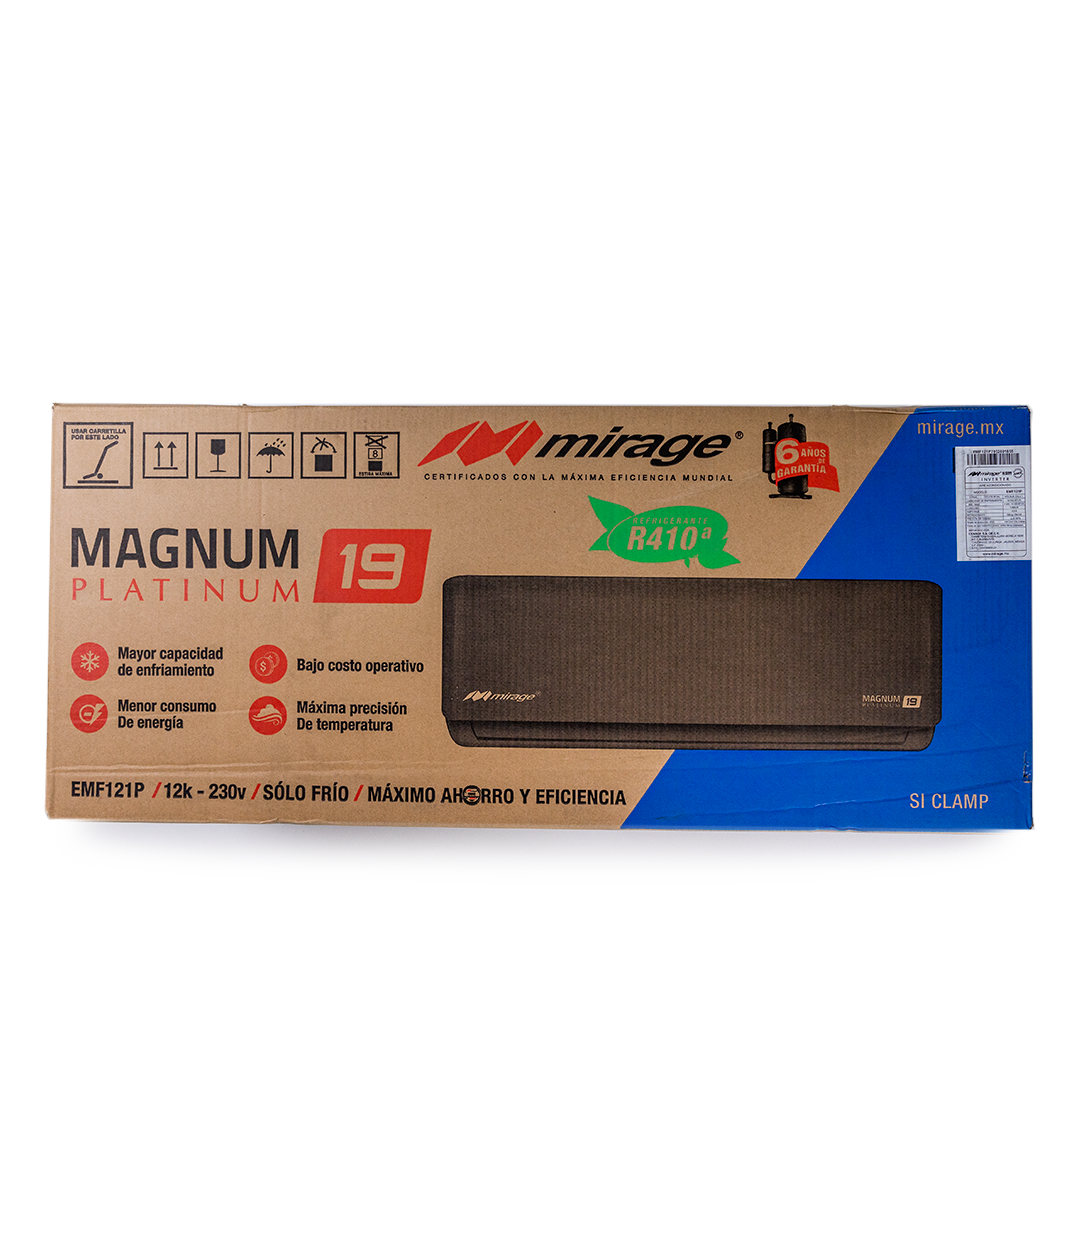 Magnum 19 Platinum Inverter CMF121P 220v 1 Tonelada